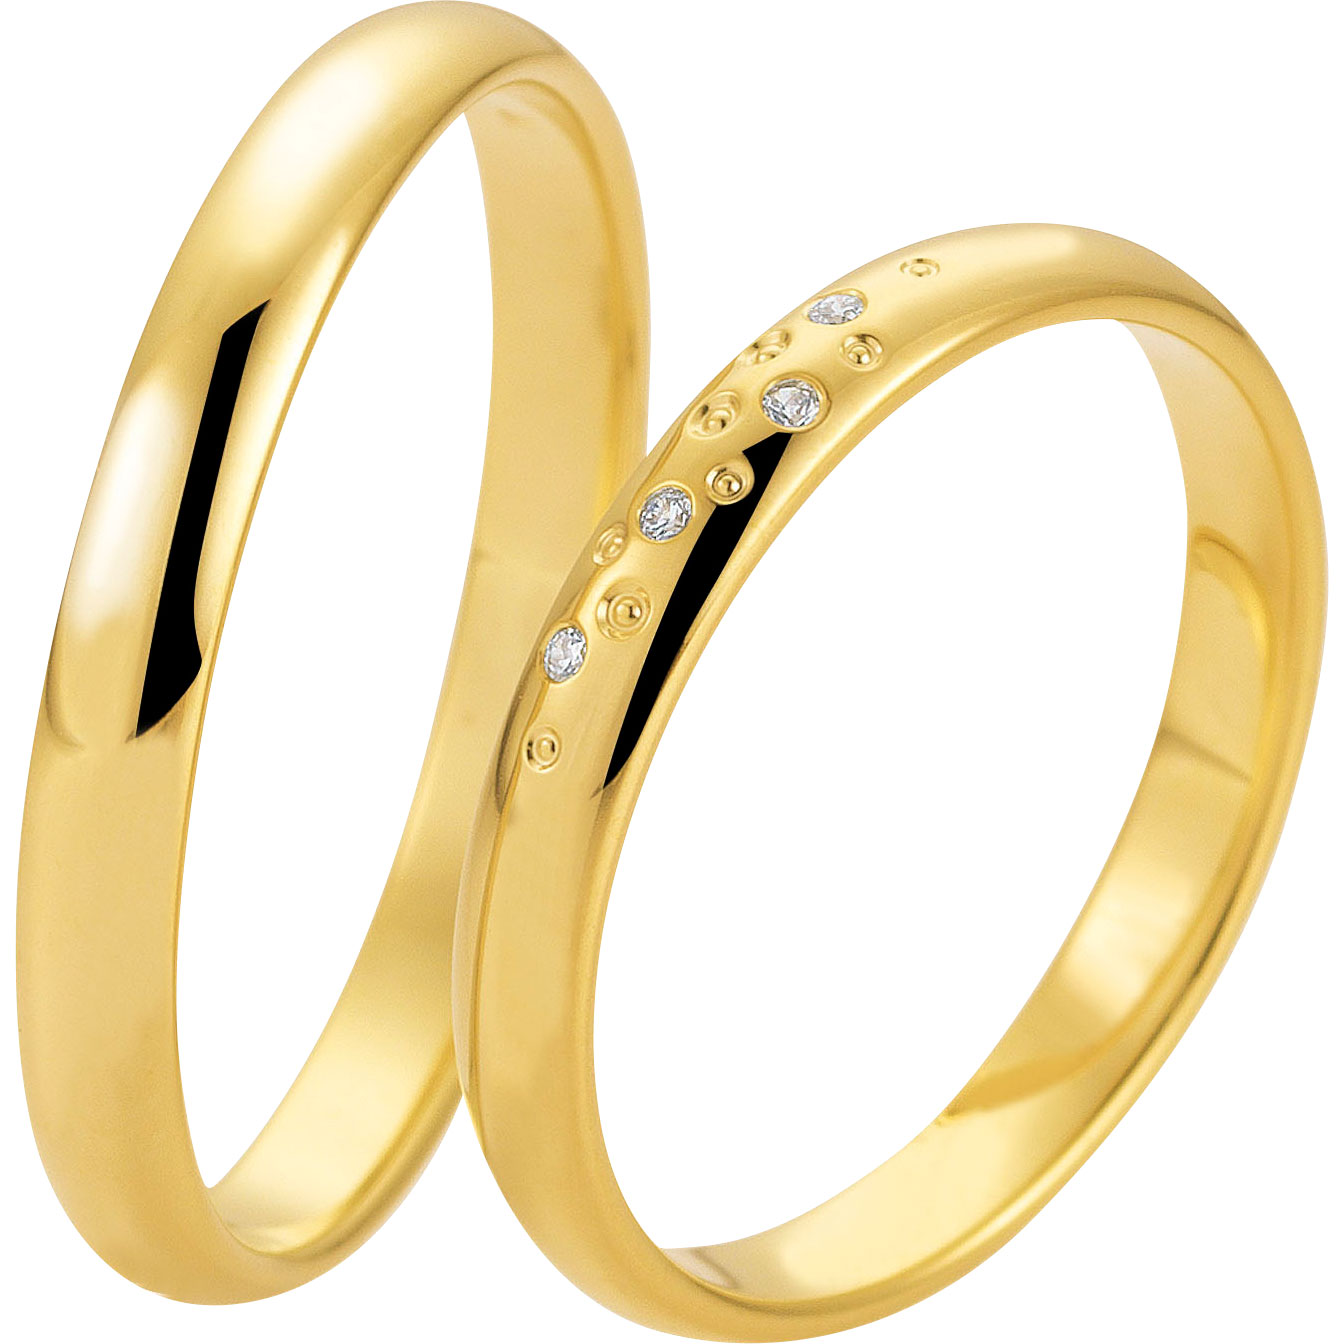 Получите свой индивидуальный дизайн кольца и изготовленное на заказ кольцо из серебра 18 карат с покрытием из золота 18 карат.